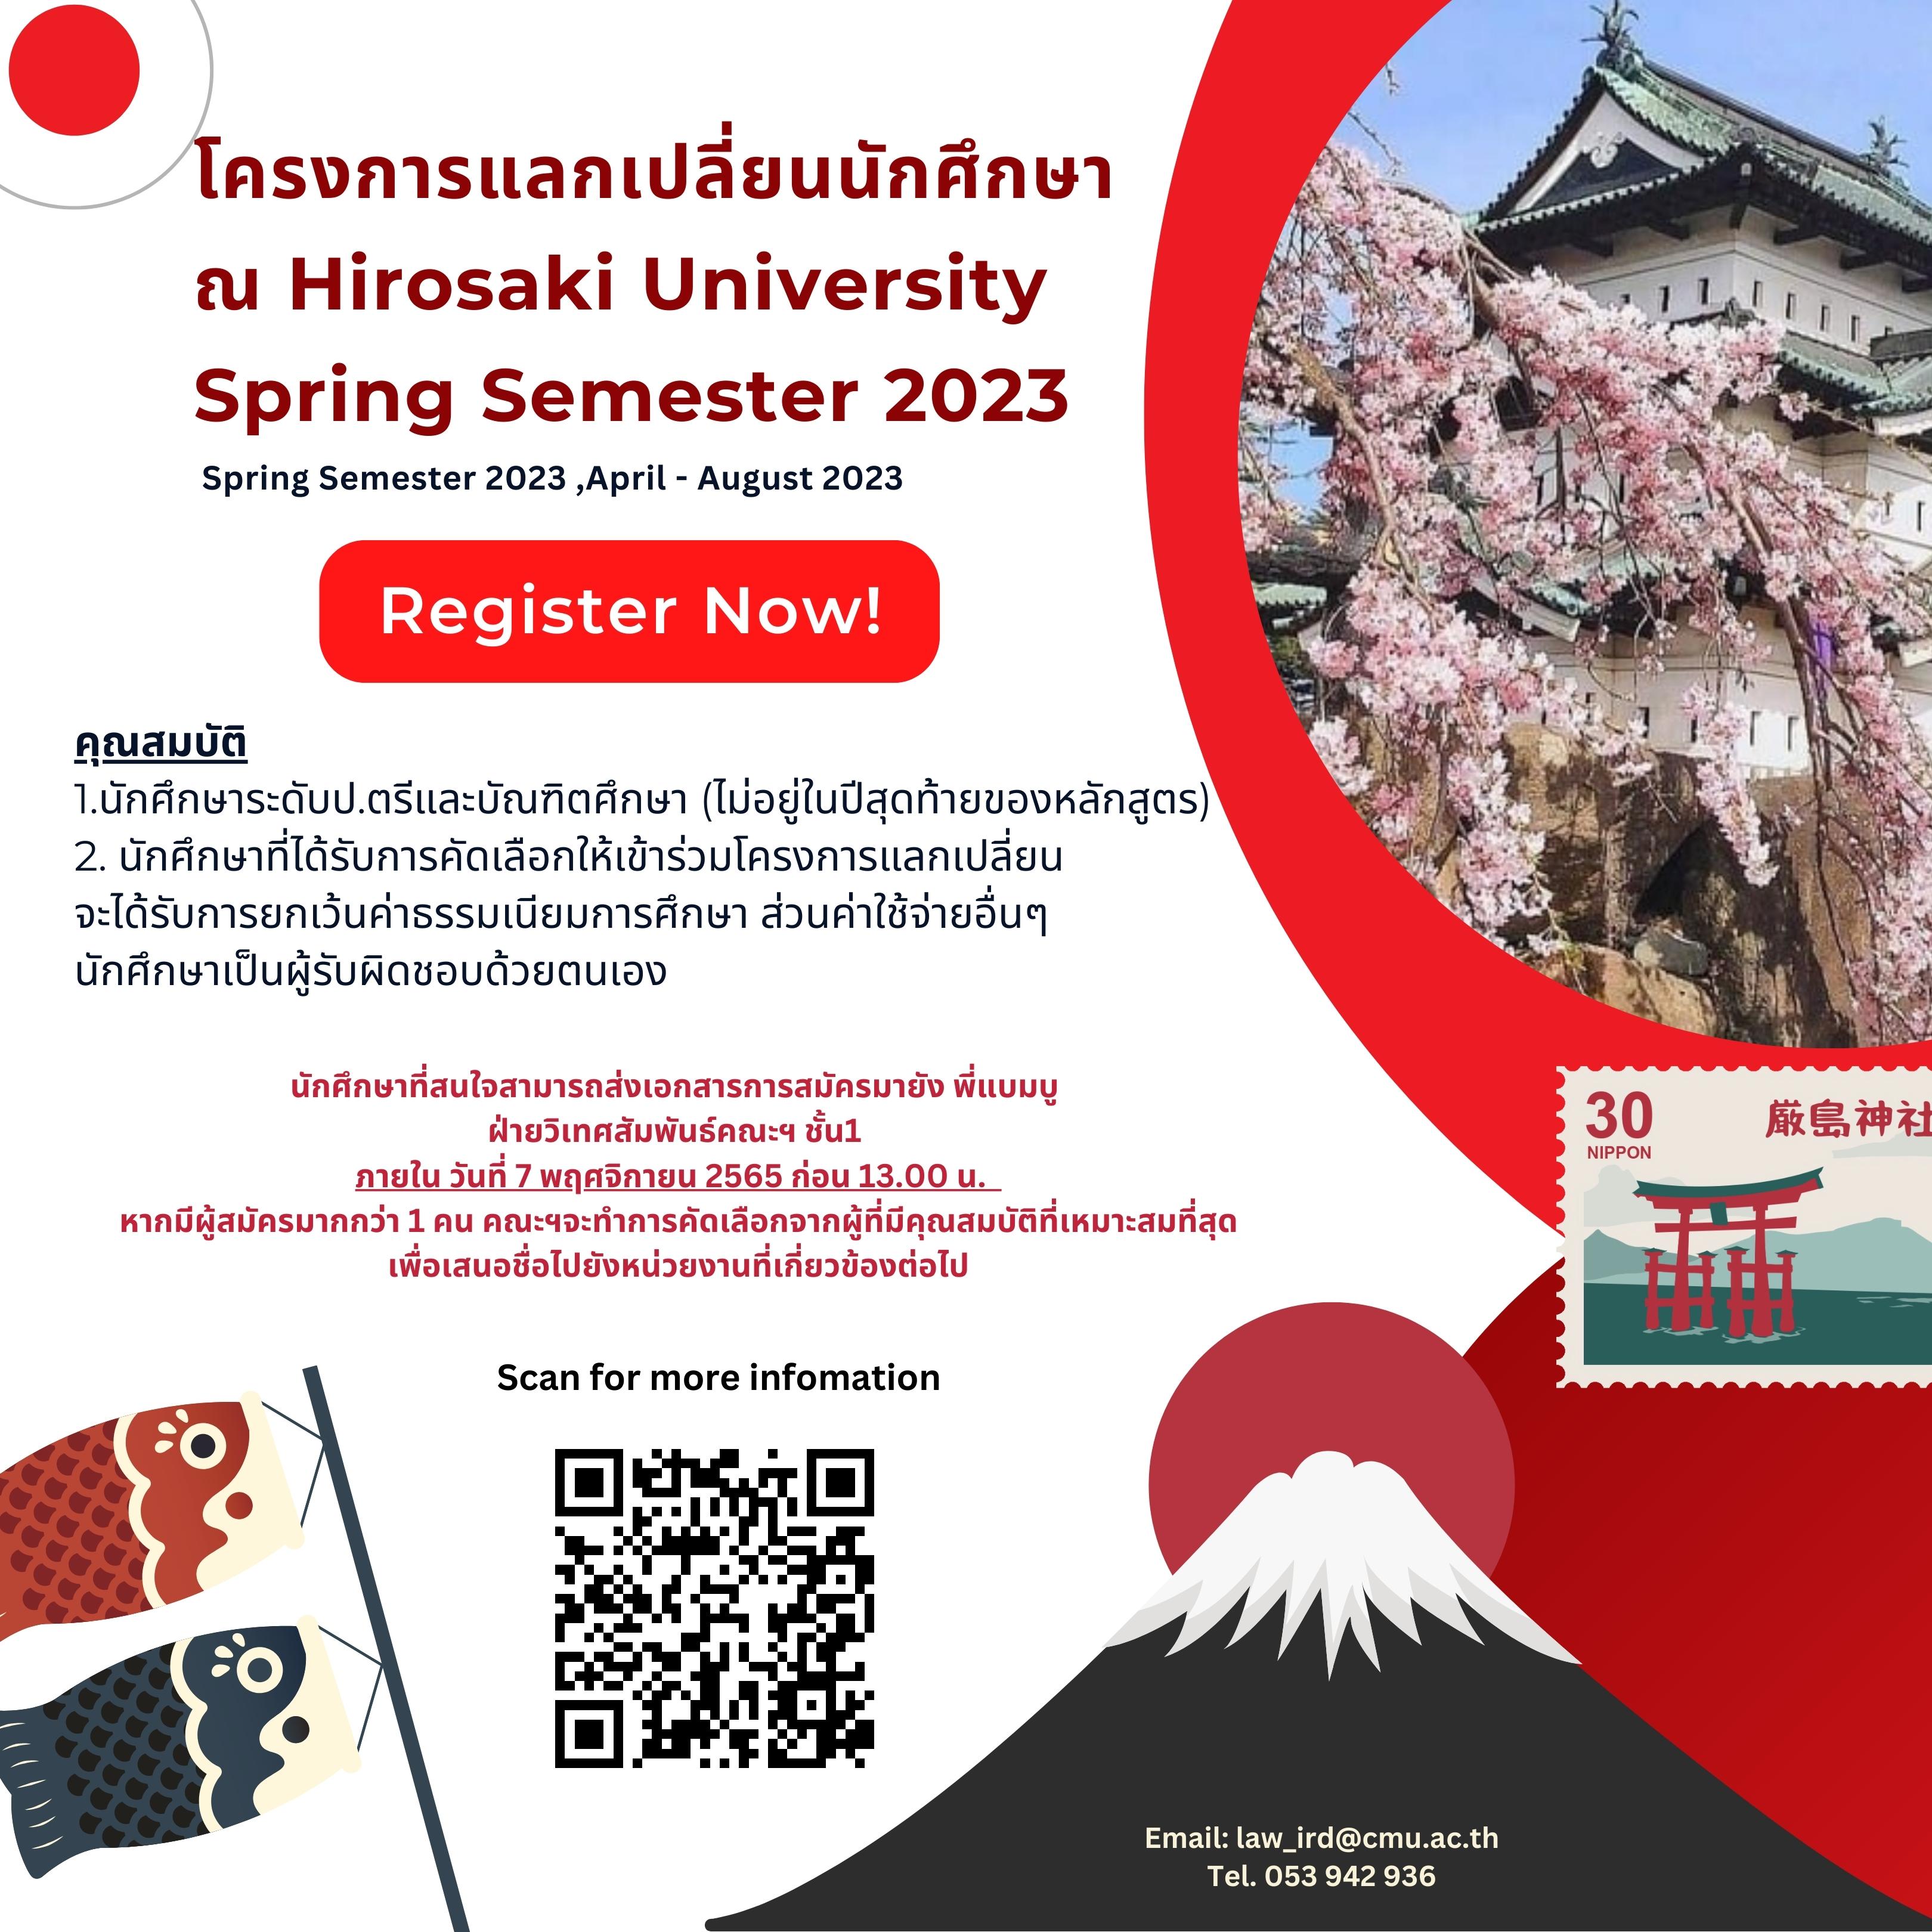 โครงการแลกเปลี่ยน Hirosaki University ประเทศญี่ปุ่น Spring Semester 2023 (หมดเขต 7 พ.ย. 65)